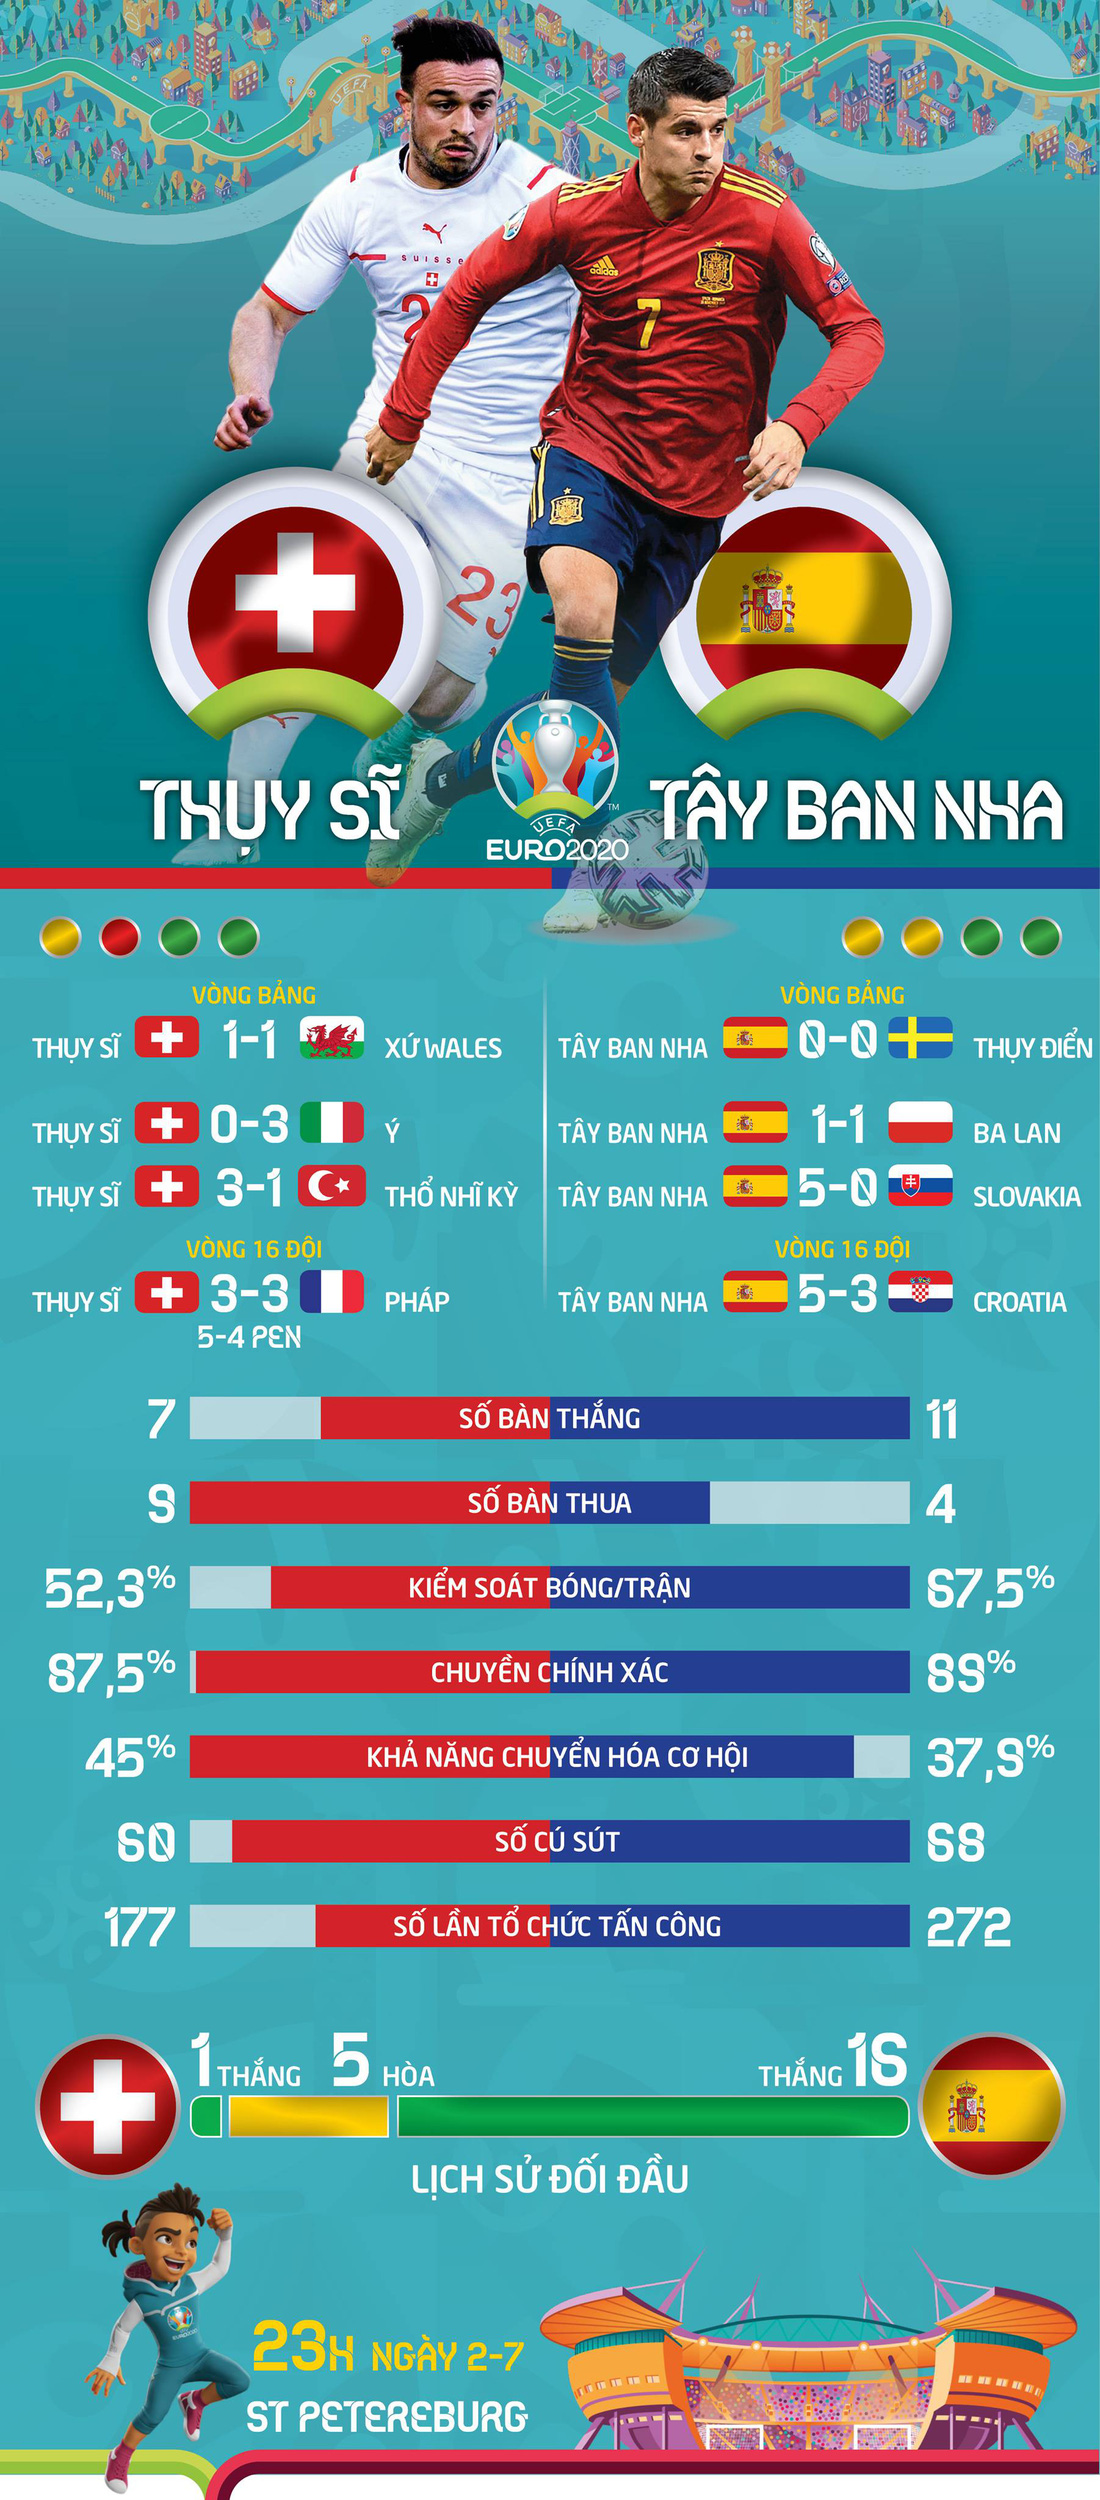 So sánh sức mạnh Thụy Sĩ và Tây Ban Nha ở tứ kết Euro 2020 - Ảnh 1.